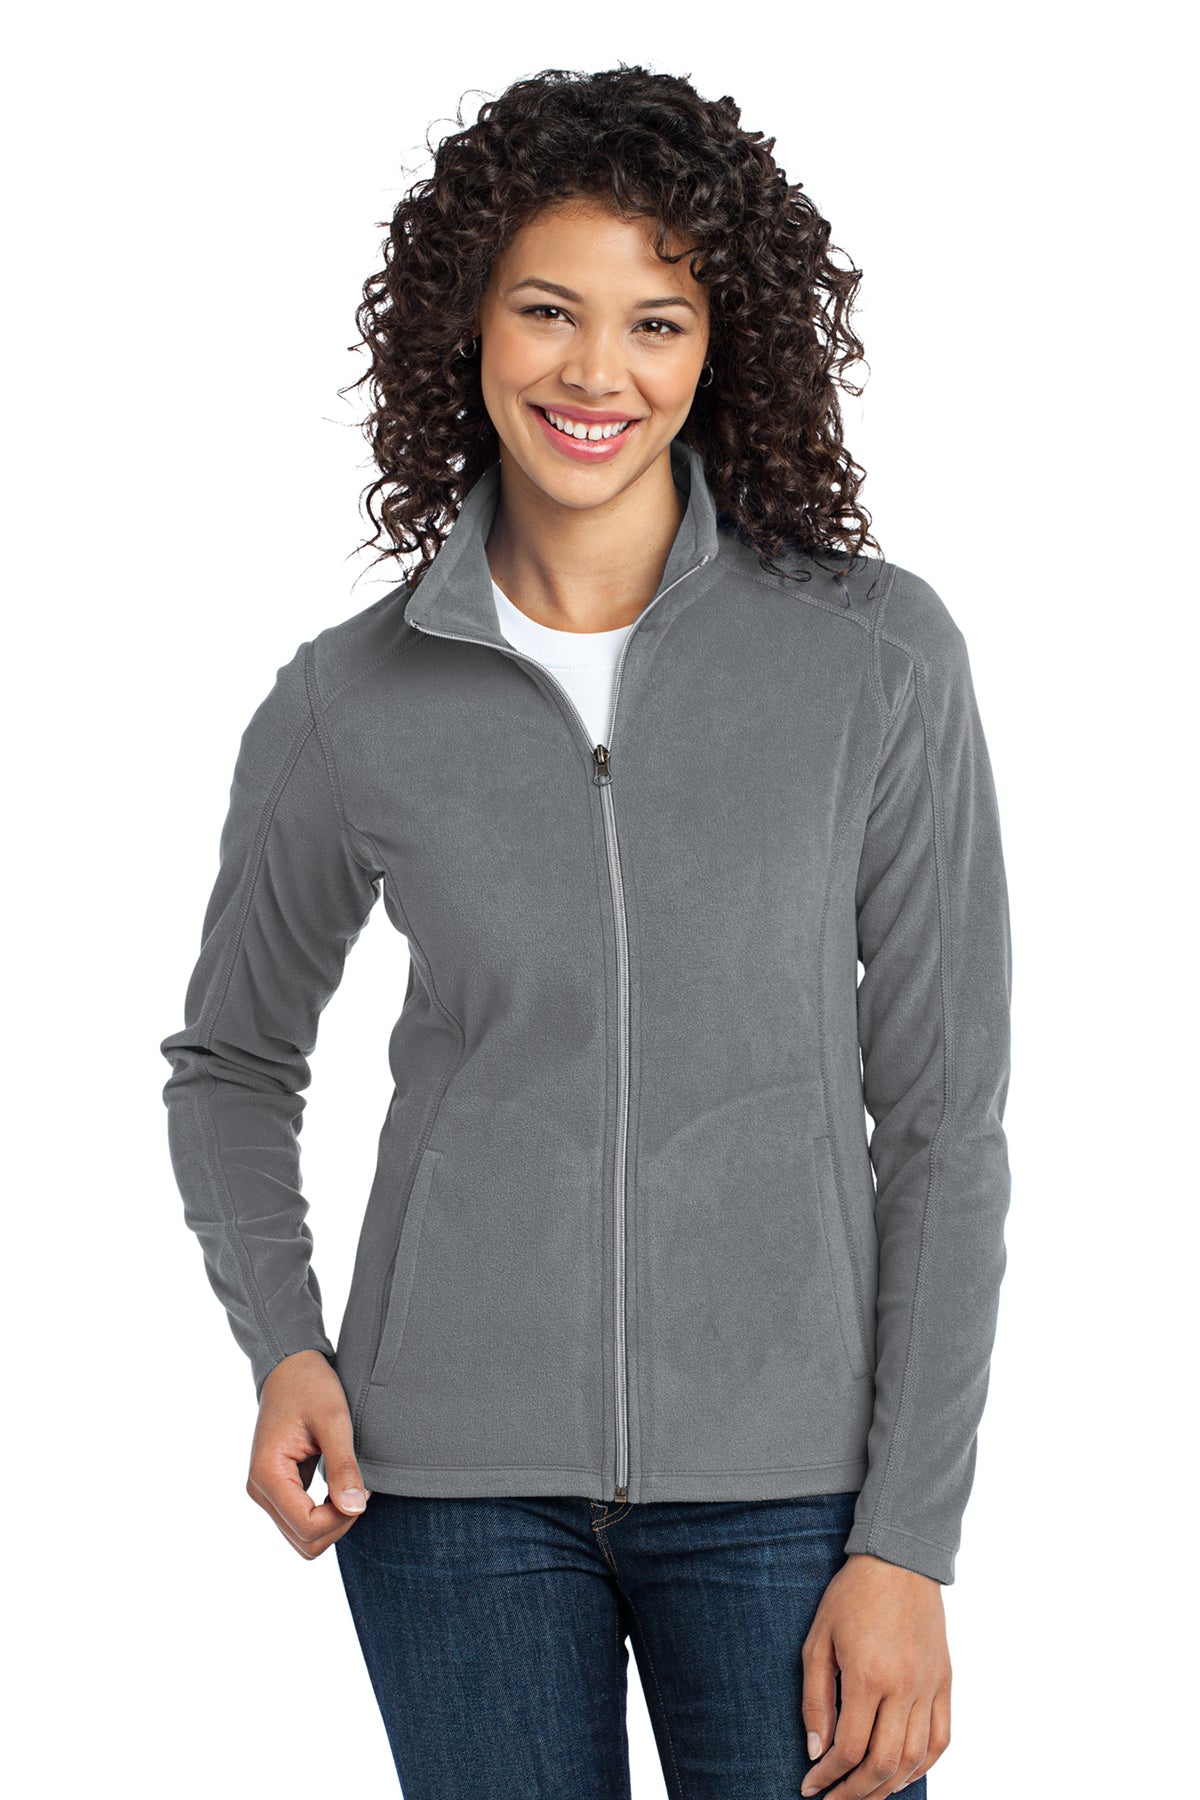 Port Authority L223 Women's Microfleece Zip Jacket Pearl Grey